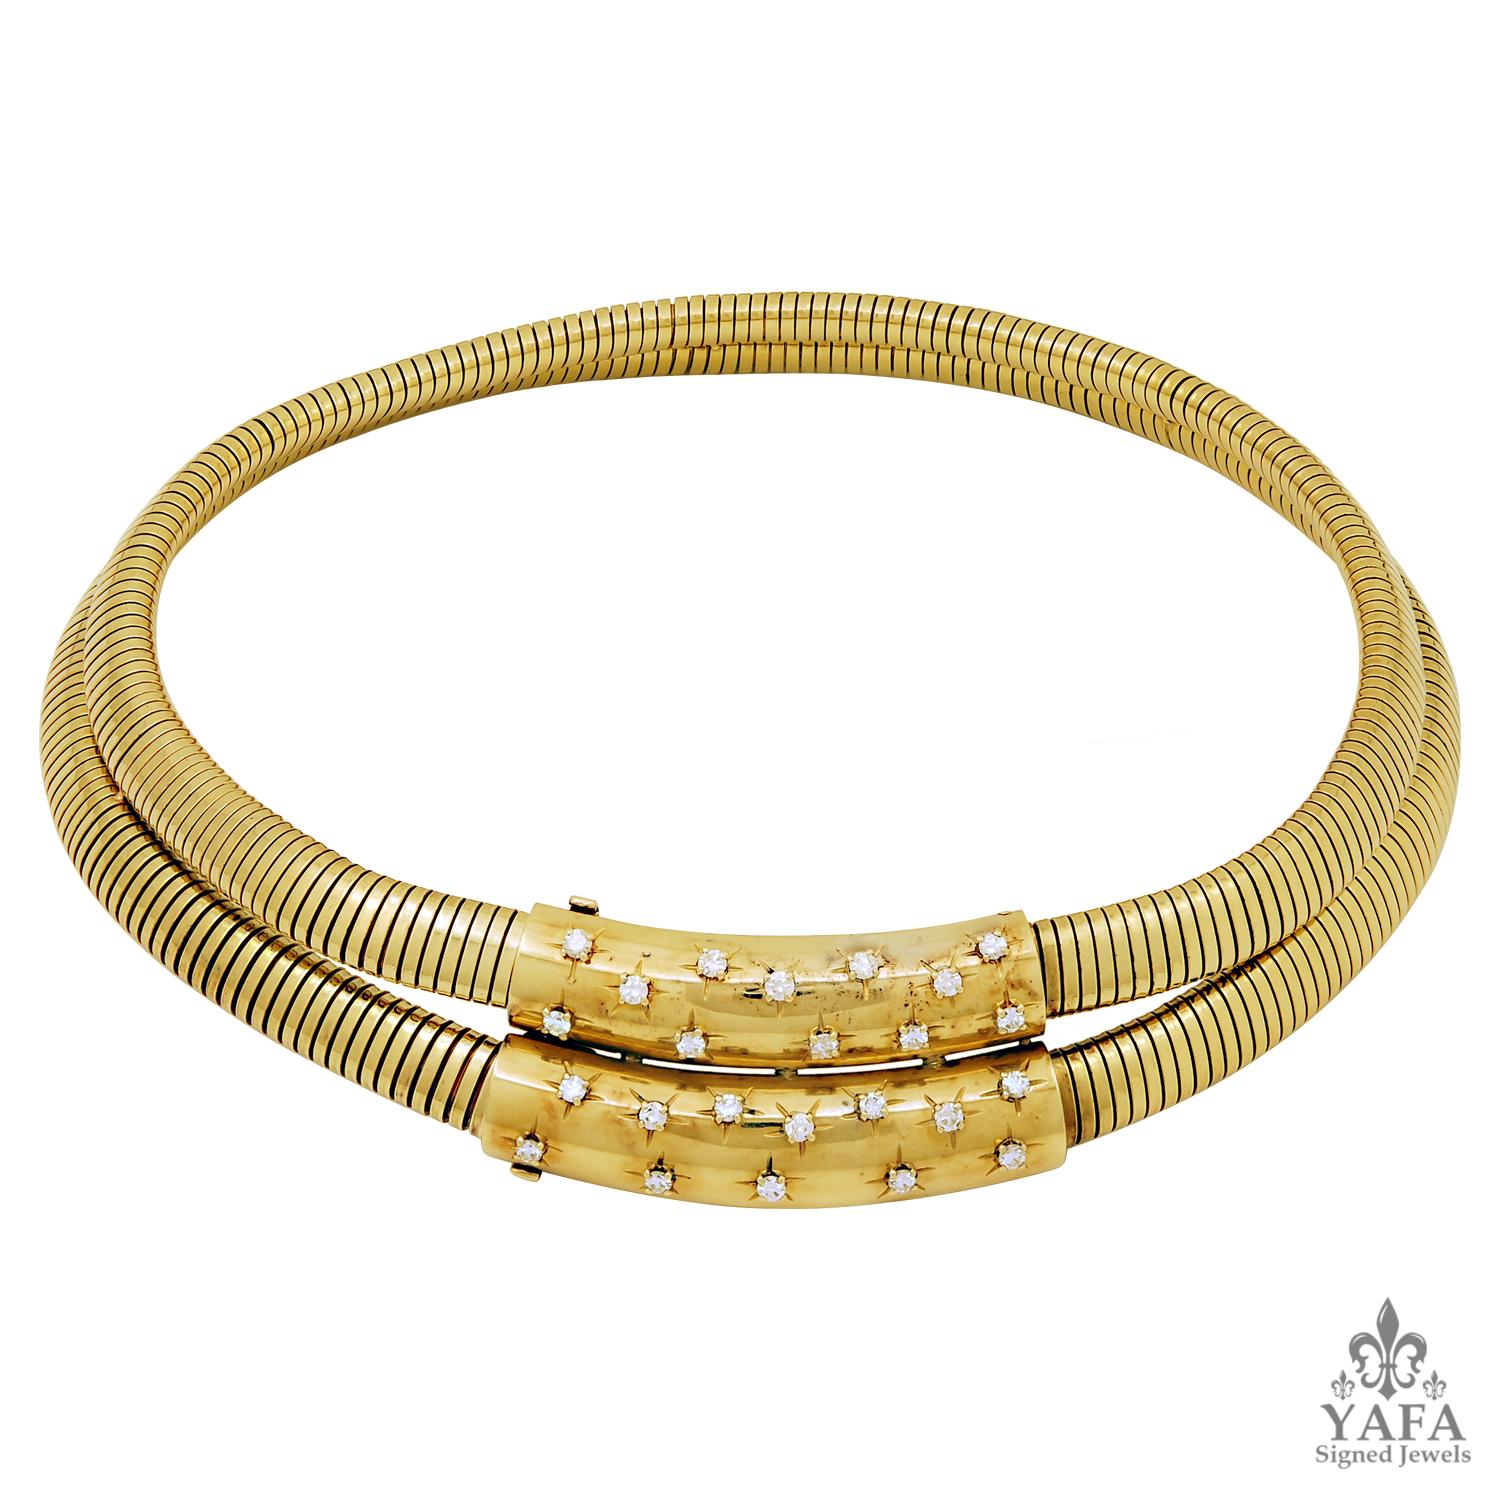 Van Cleef & Arpels Vintage Retro Double Diamond Gold Tubogaz Halskette
Bedeutung
Diese außergewöhnliche Halskette von Van Cleef & Arpels ist ein Wunder an Retro-Design. Diese Halskette besteht aus einer revolutionären, flexiblen Tubogas-Gliederkette